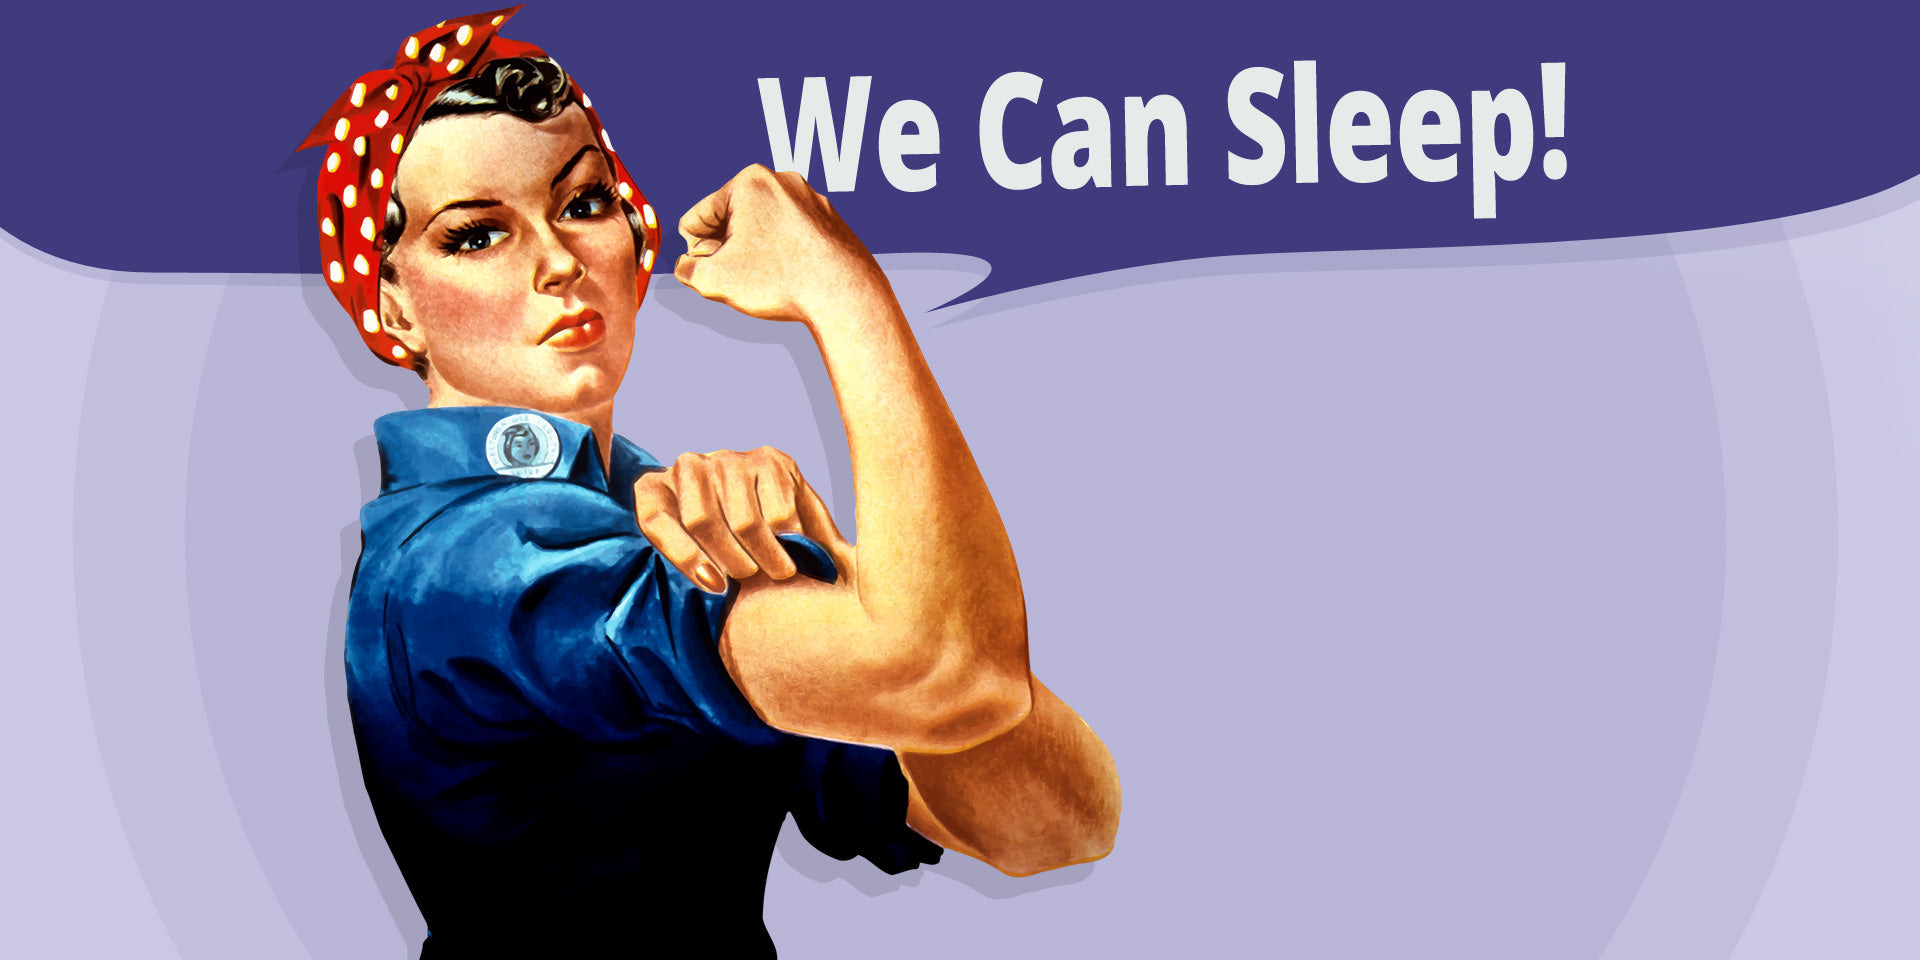 Yes we can sleep!